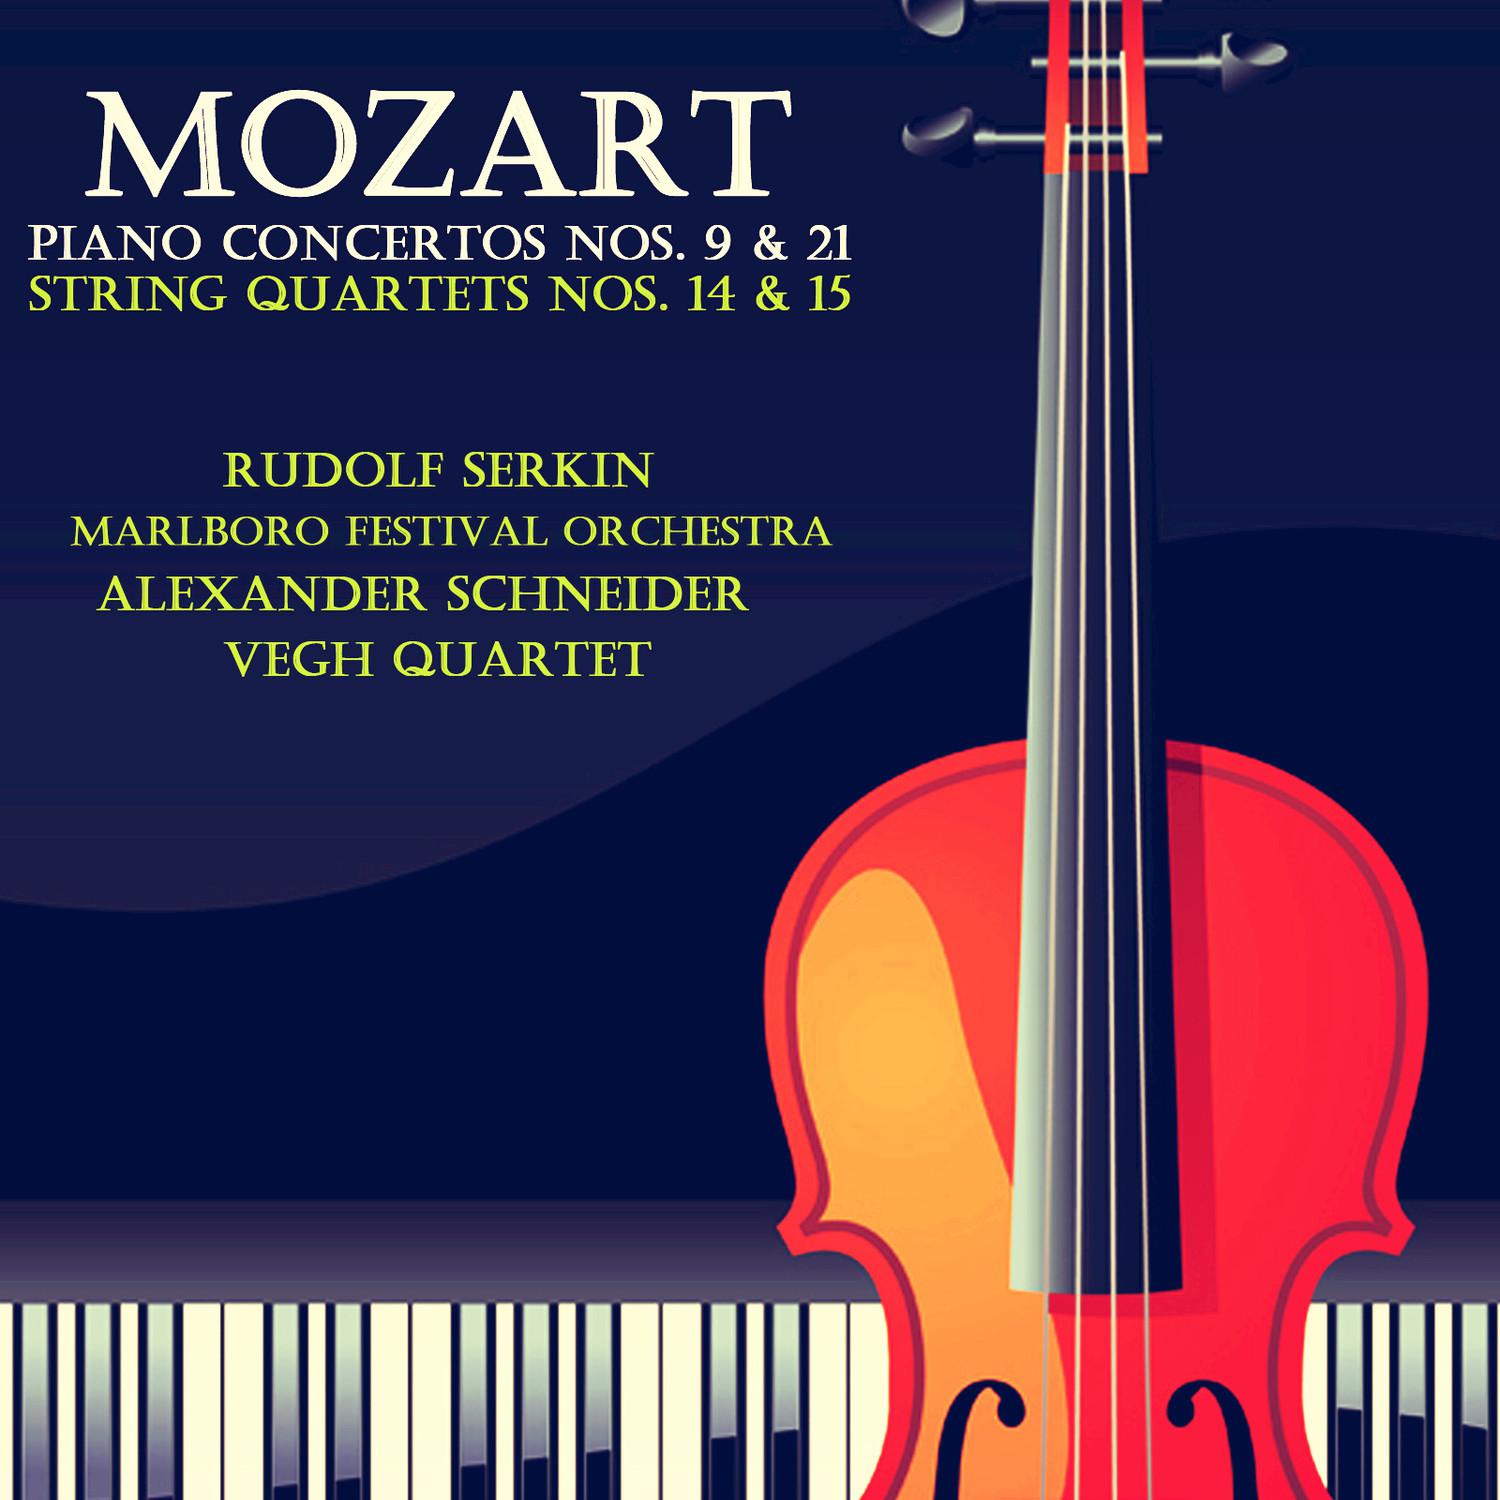 String Quartet No. 14 in G Major, K. 387, "Spring": I. Allegro vivace assai